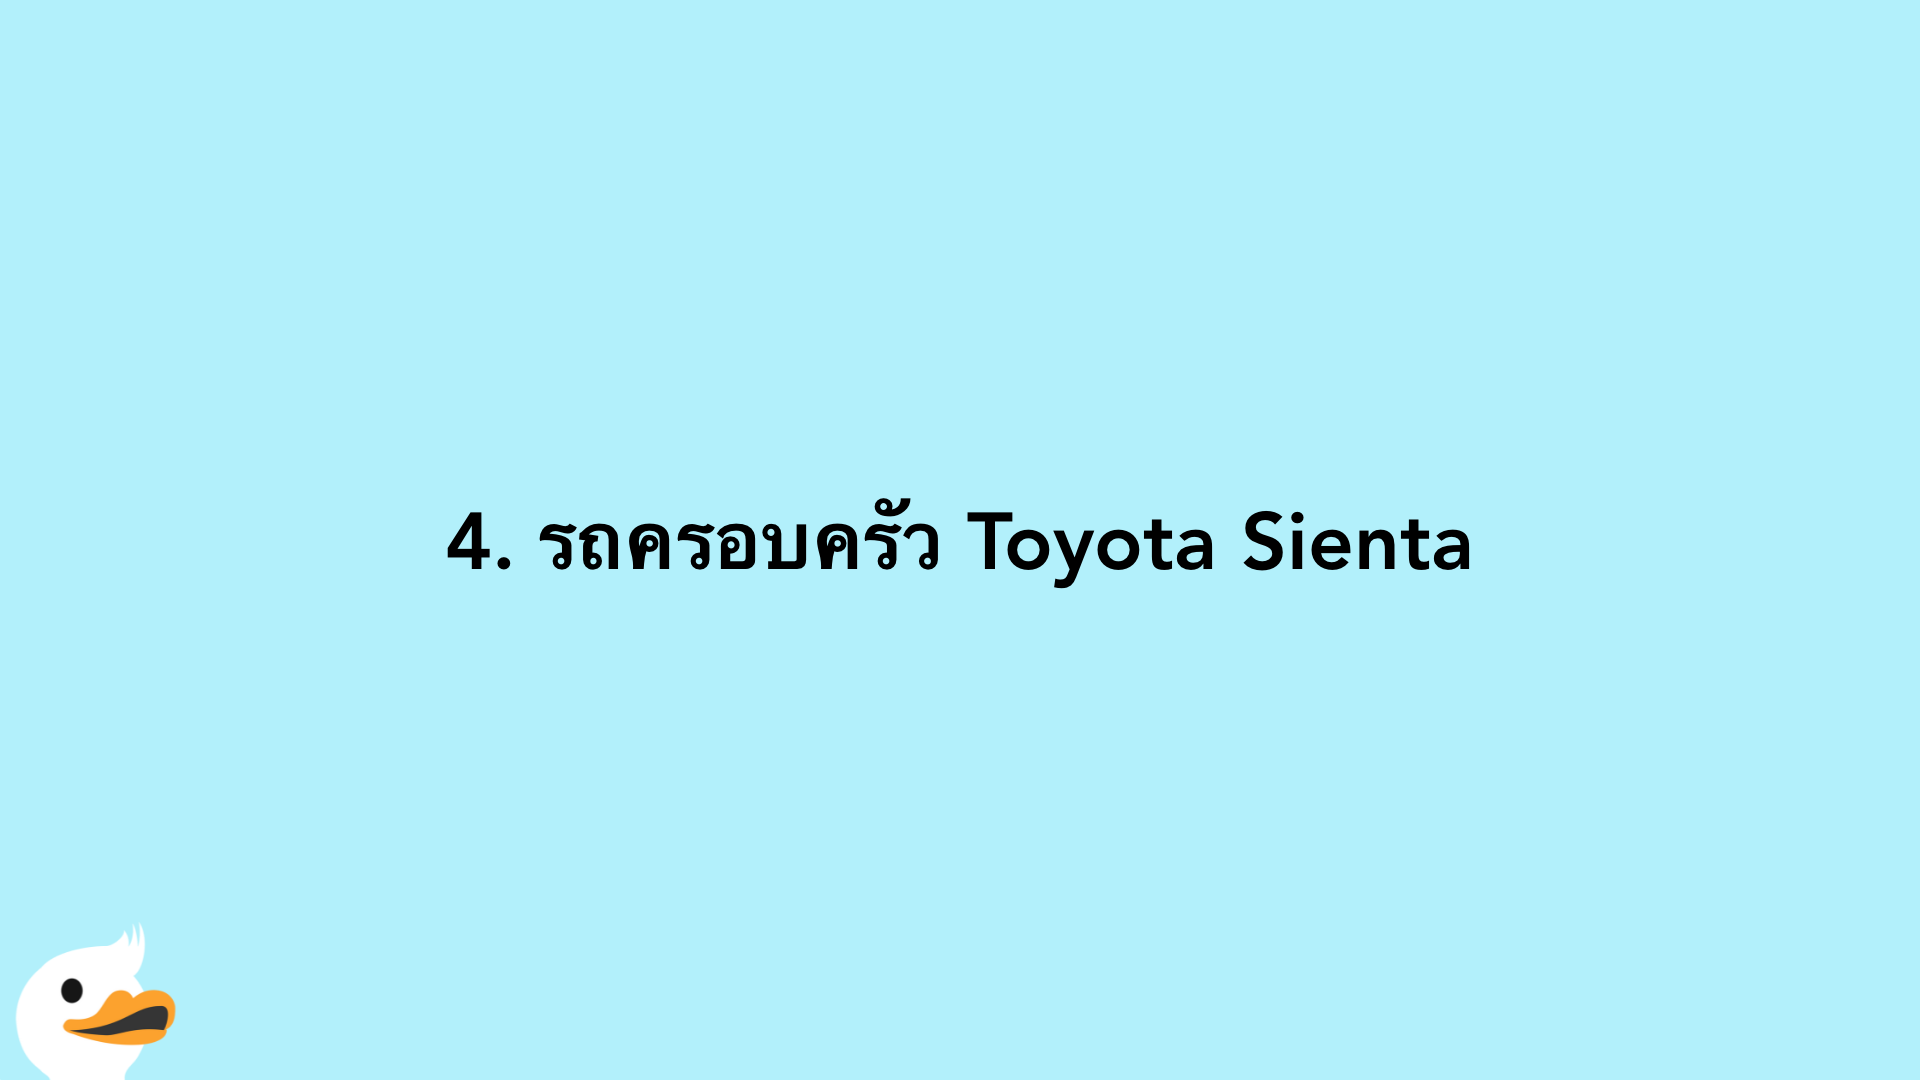 4. รถครอบครัว Toyota Sienta